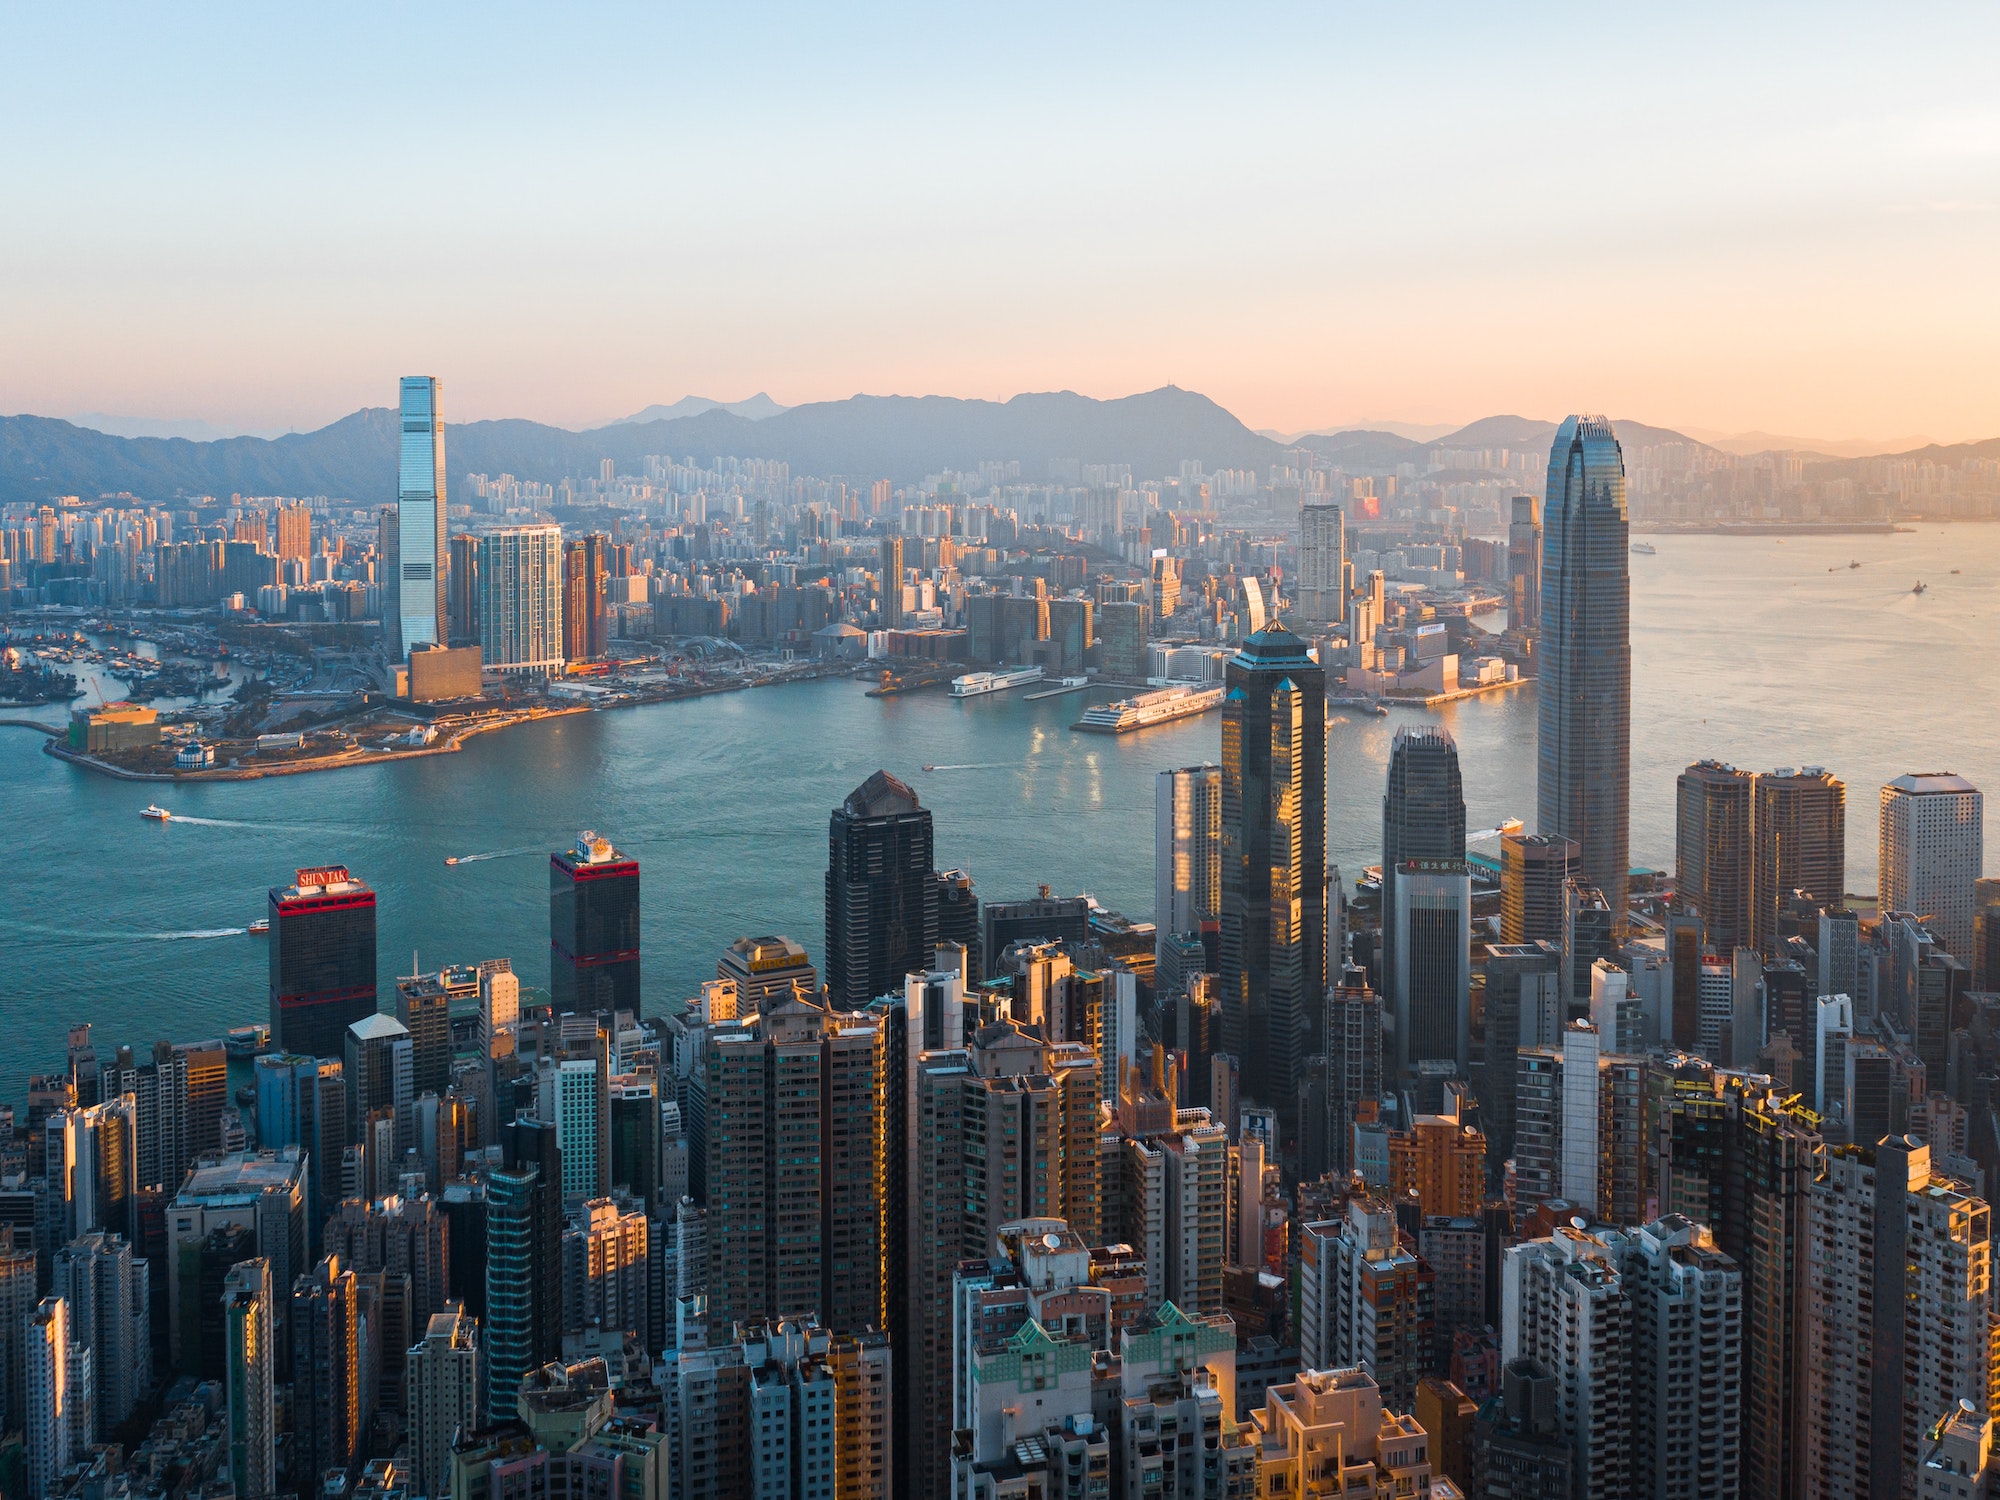 Hong Kong tightens arrivals procedures until April 2022